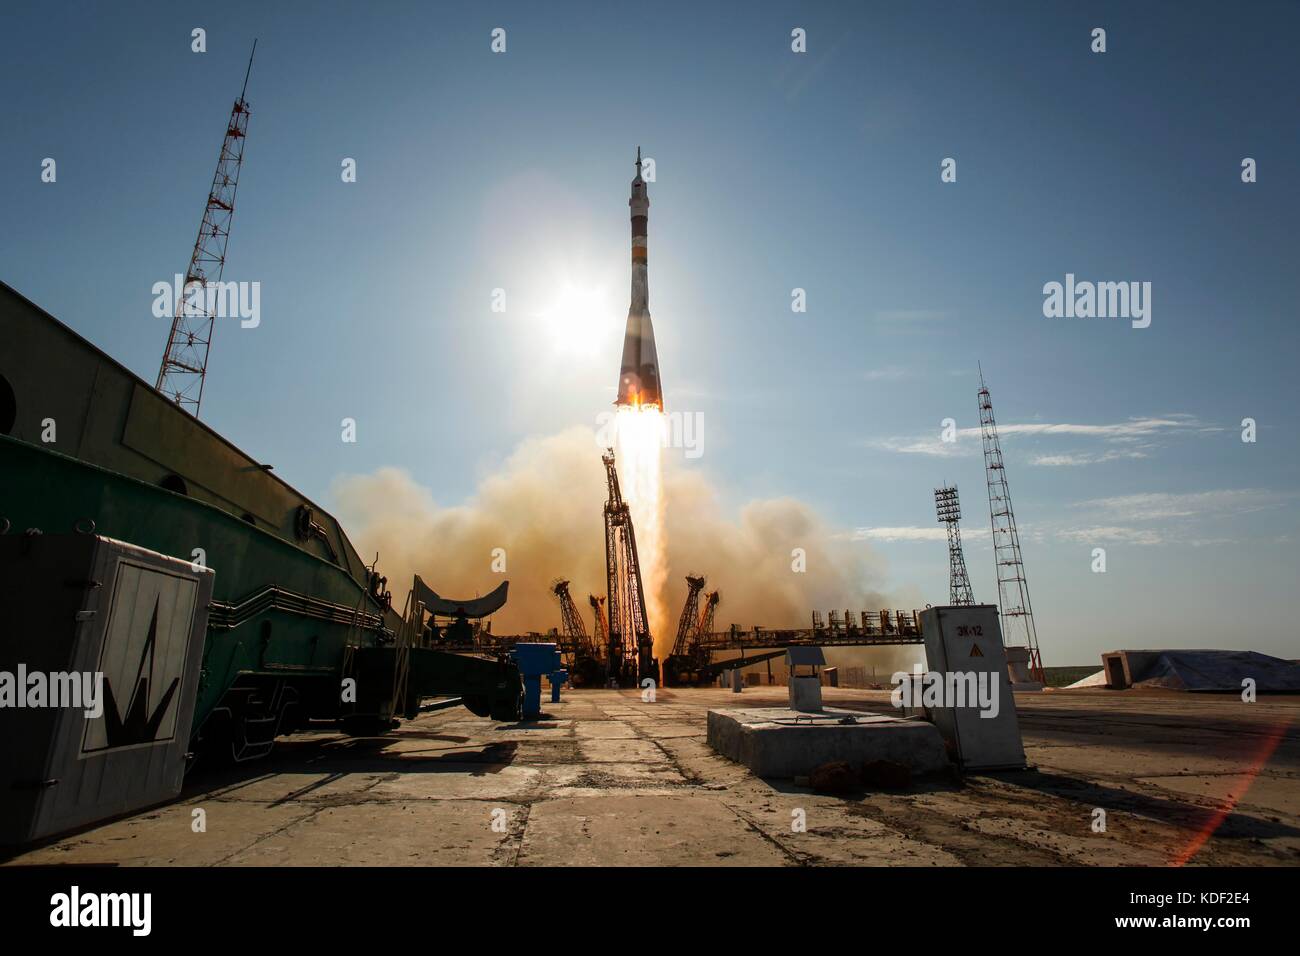 La nave Soyuz TMA-06m lanzamientos espaciales desde el cosmódromo de Baikonur para comenzar la expedición 33/34 misión a la estación espacial internacional de la nasa octubre 23, 2012 en Baikonur, Kazajstán. (Foto por Bill ingalls via planetpix) Foto de stock